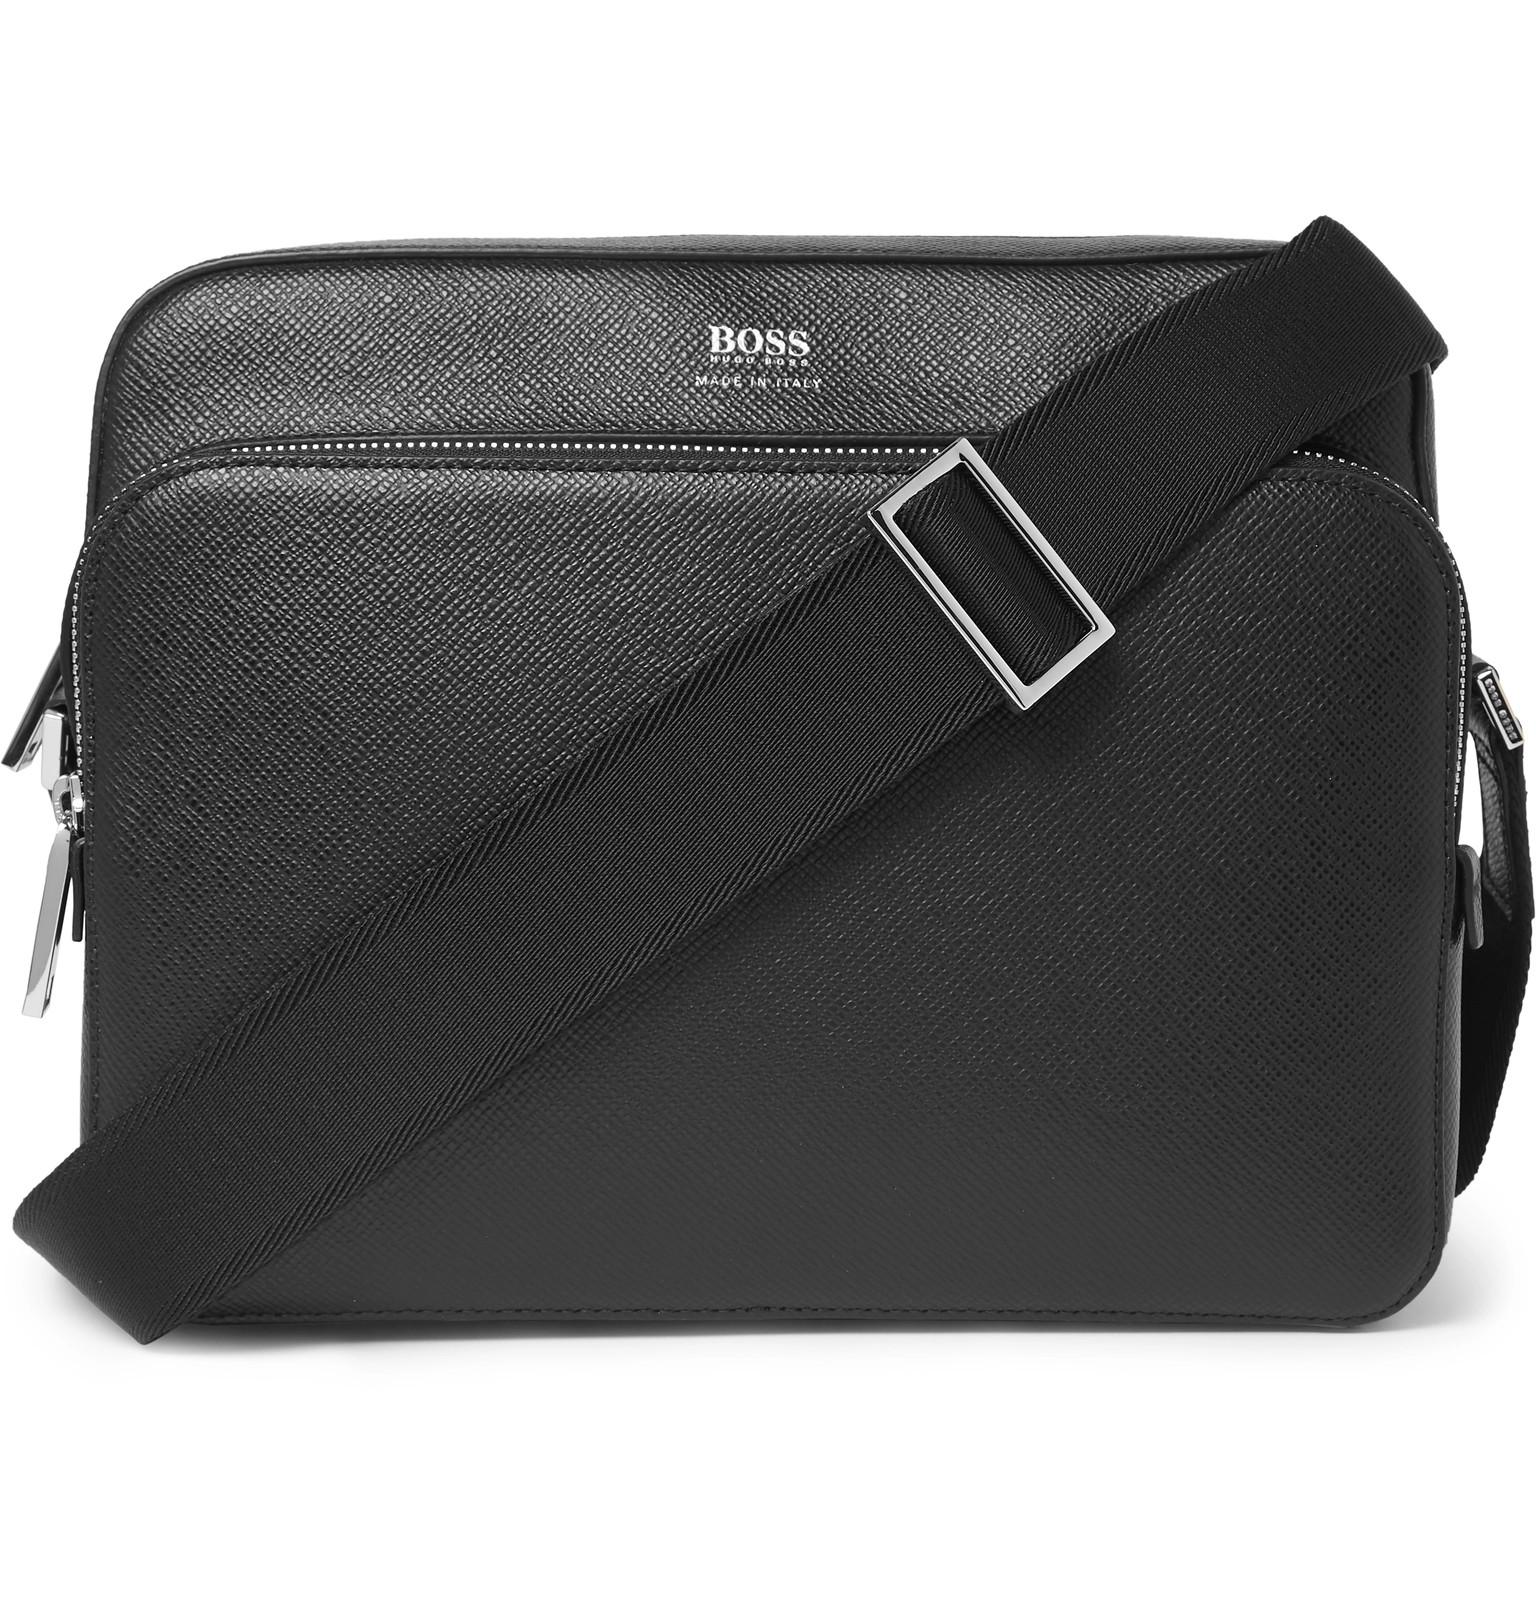 BOSS by HUGO BOSS Cross-grain Leather Messenger Bag in Black Men | Lyst